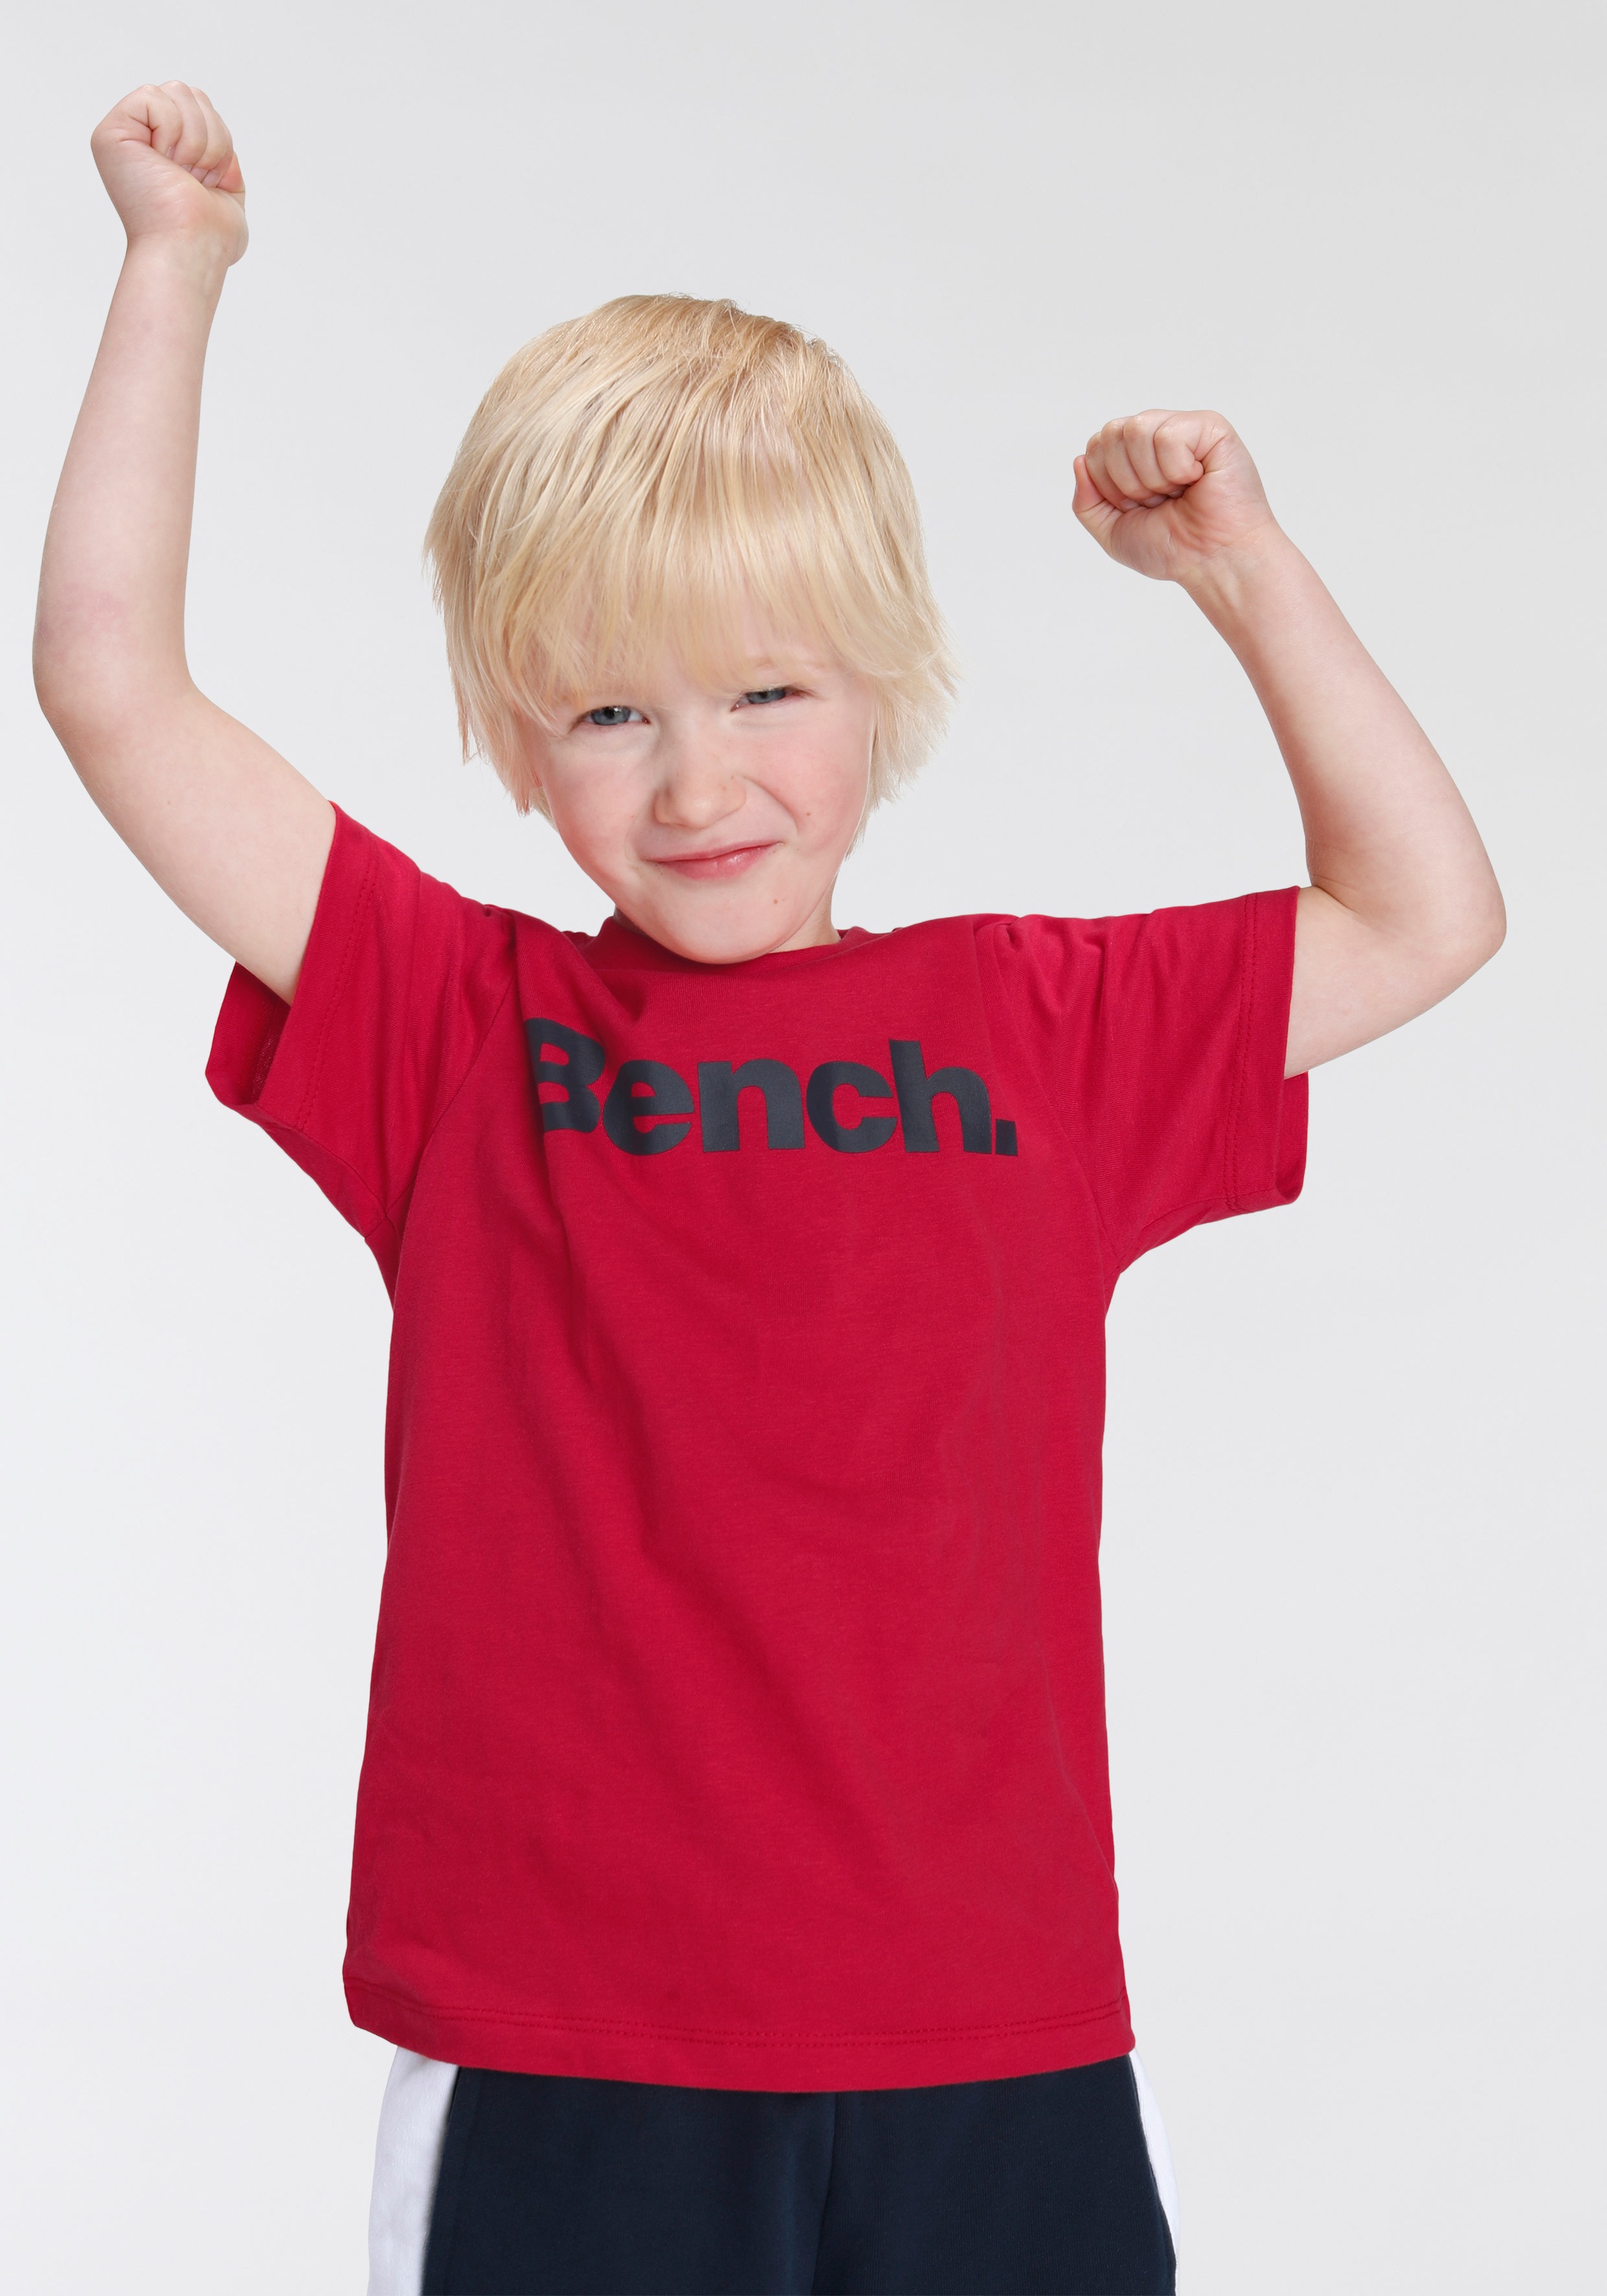 Bench. T-Shirt & Sweatbermudas, (Set, 2 tlg.) Online-Shop bestellen im